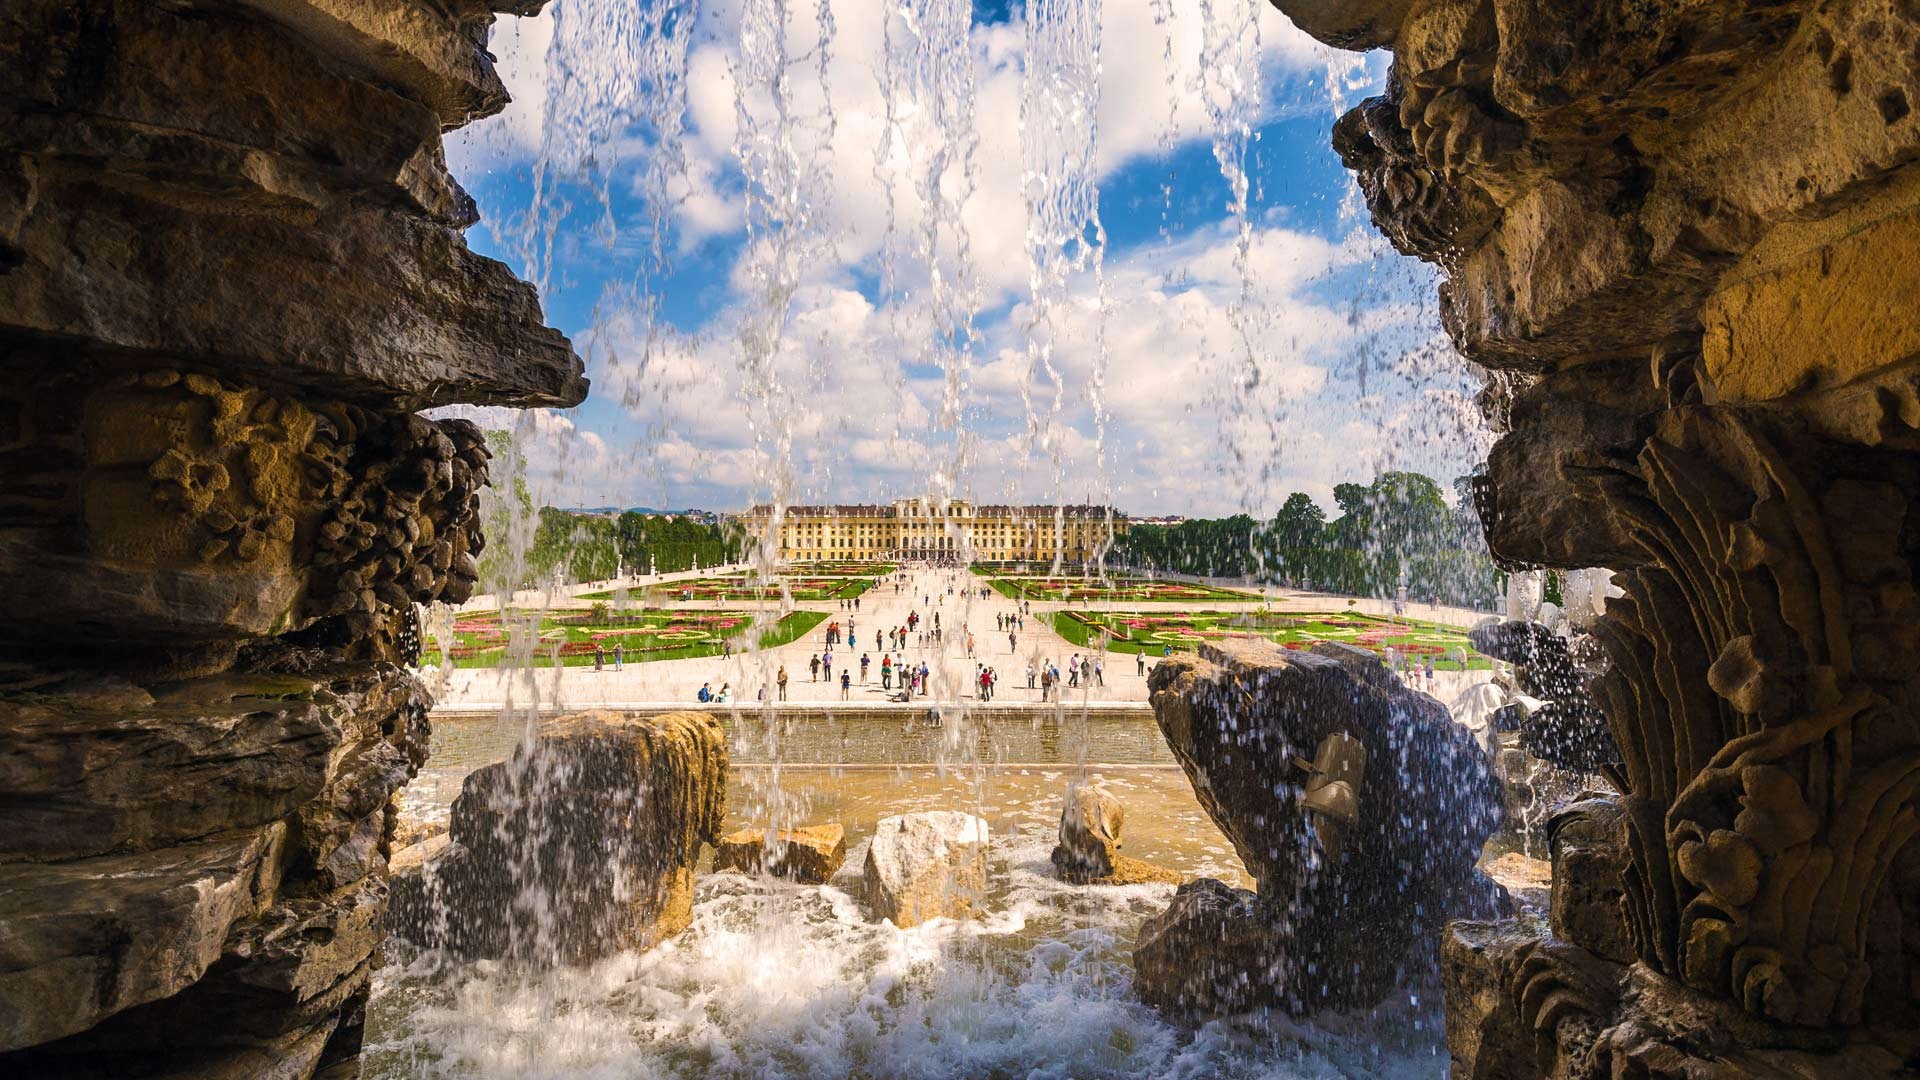 Schonbrunn Palace, Desktop wallpapers, HD background images, Schnbrunn palace, 1920x1080 Full HD Desktop